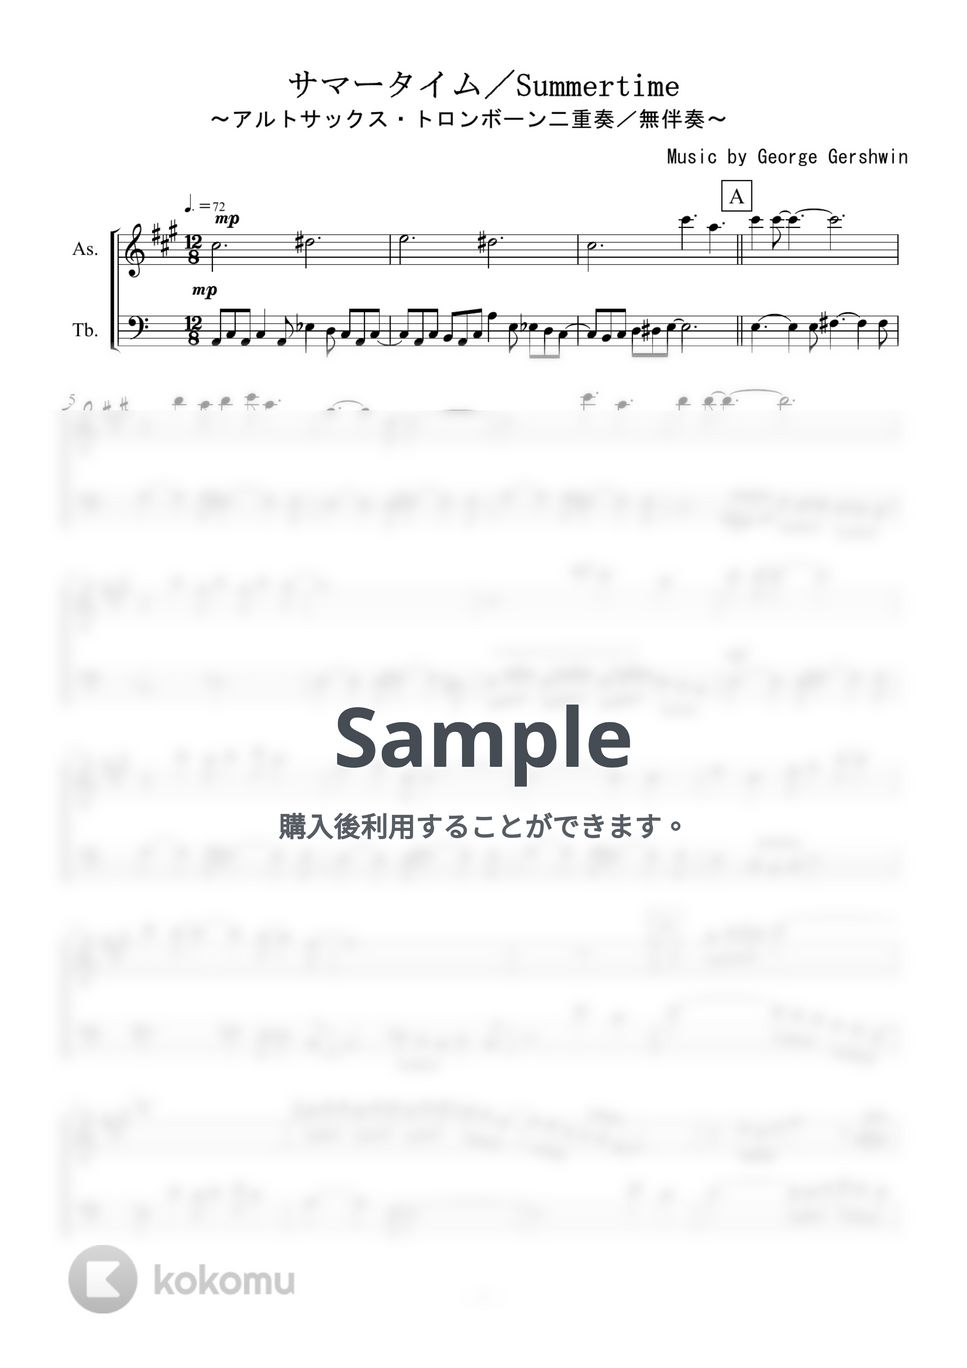 ガーシュイン - Summertime (アルトサックス・トロンボーン二重奏／無伴奏) by kiminabe